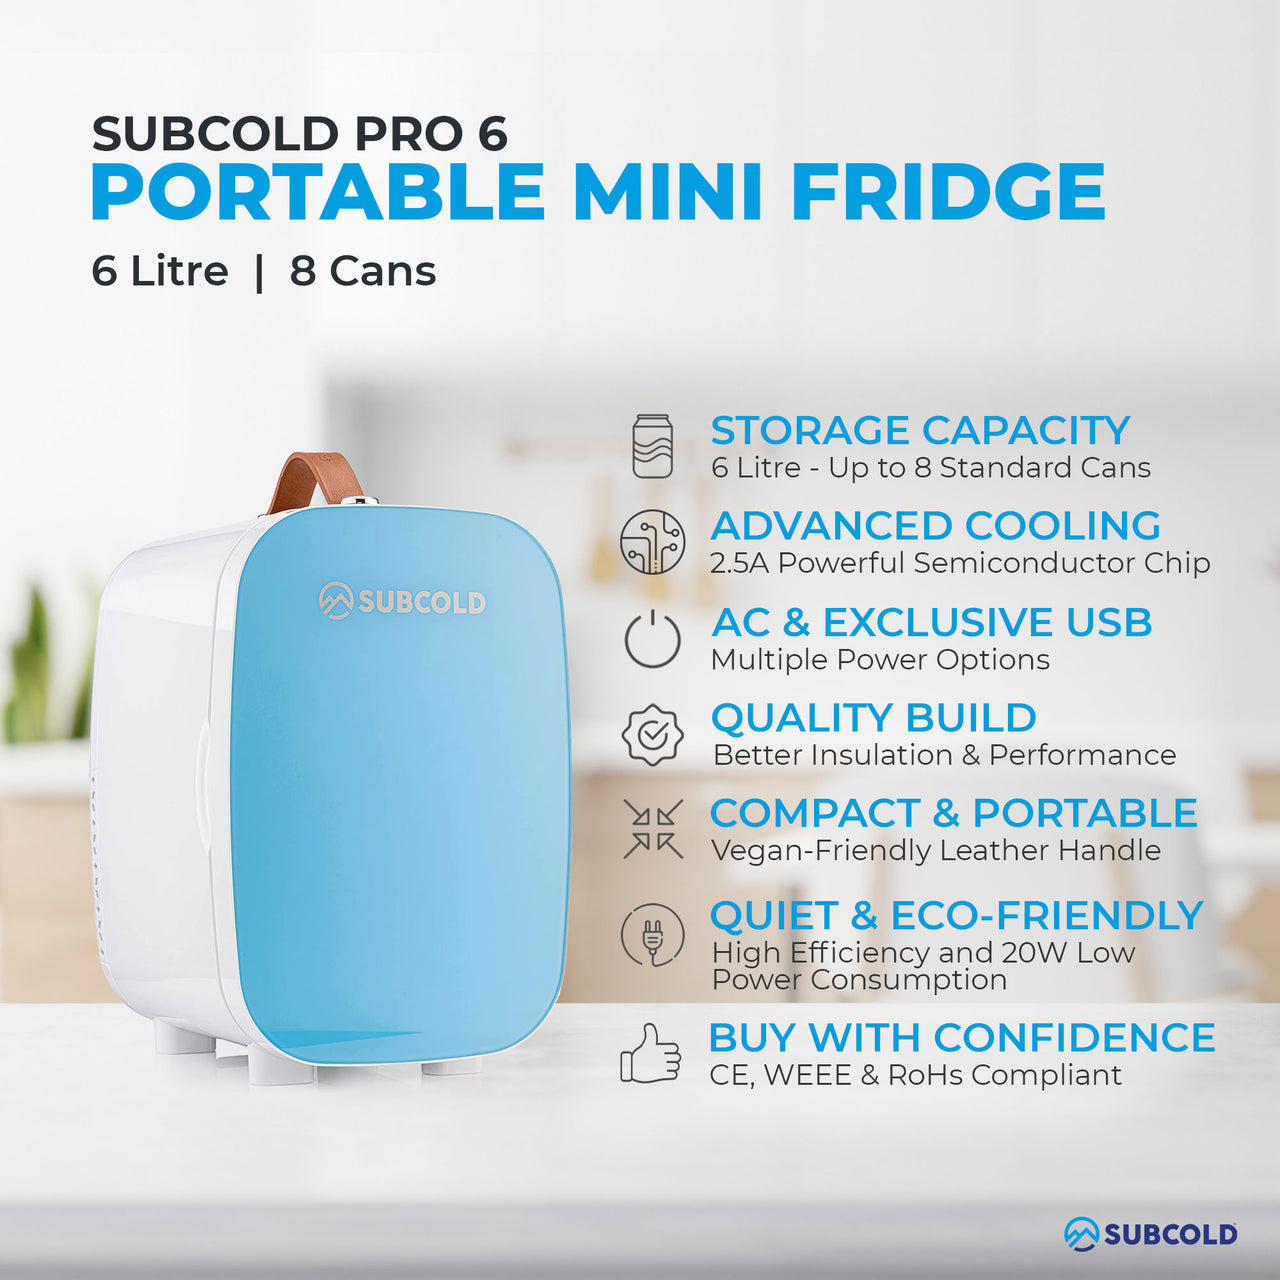 Subcold Pro 6 litre blue mini fridge features infographic